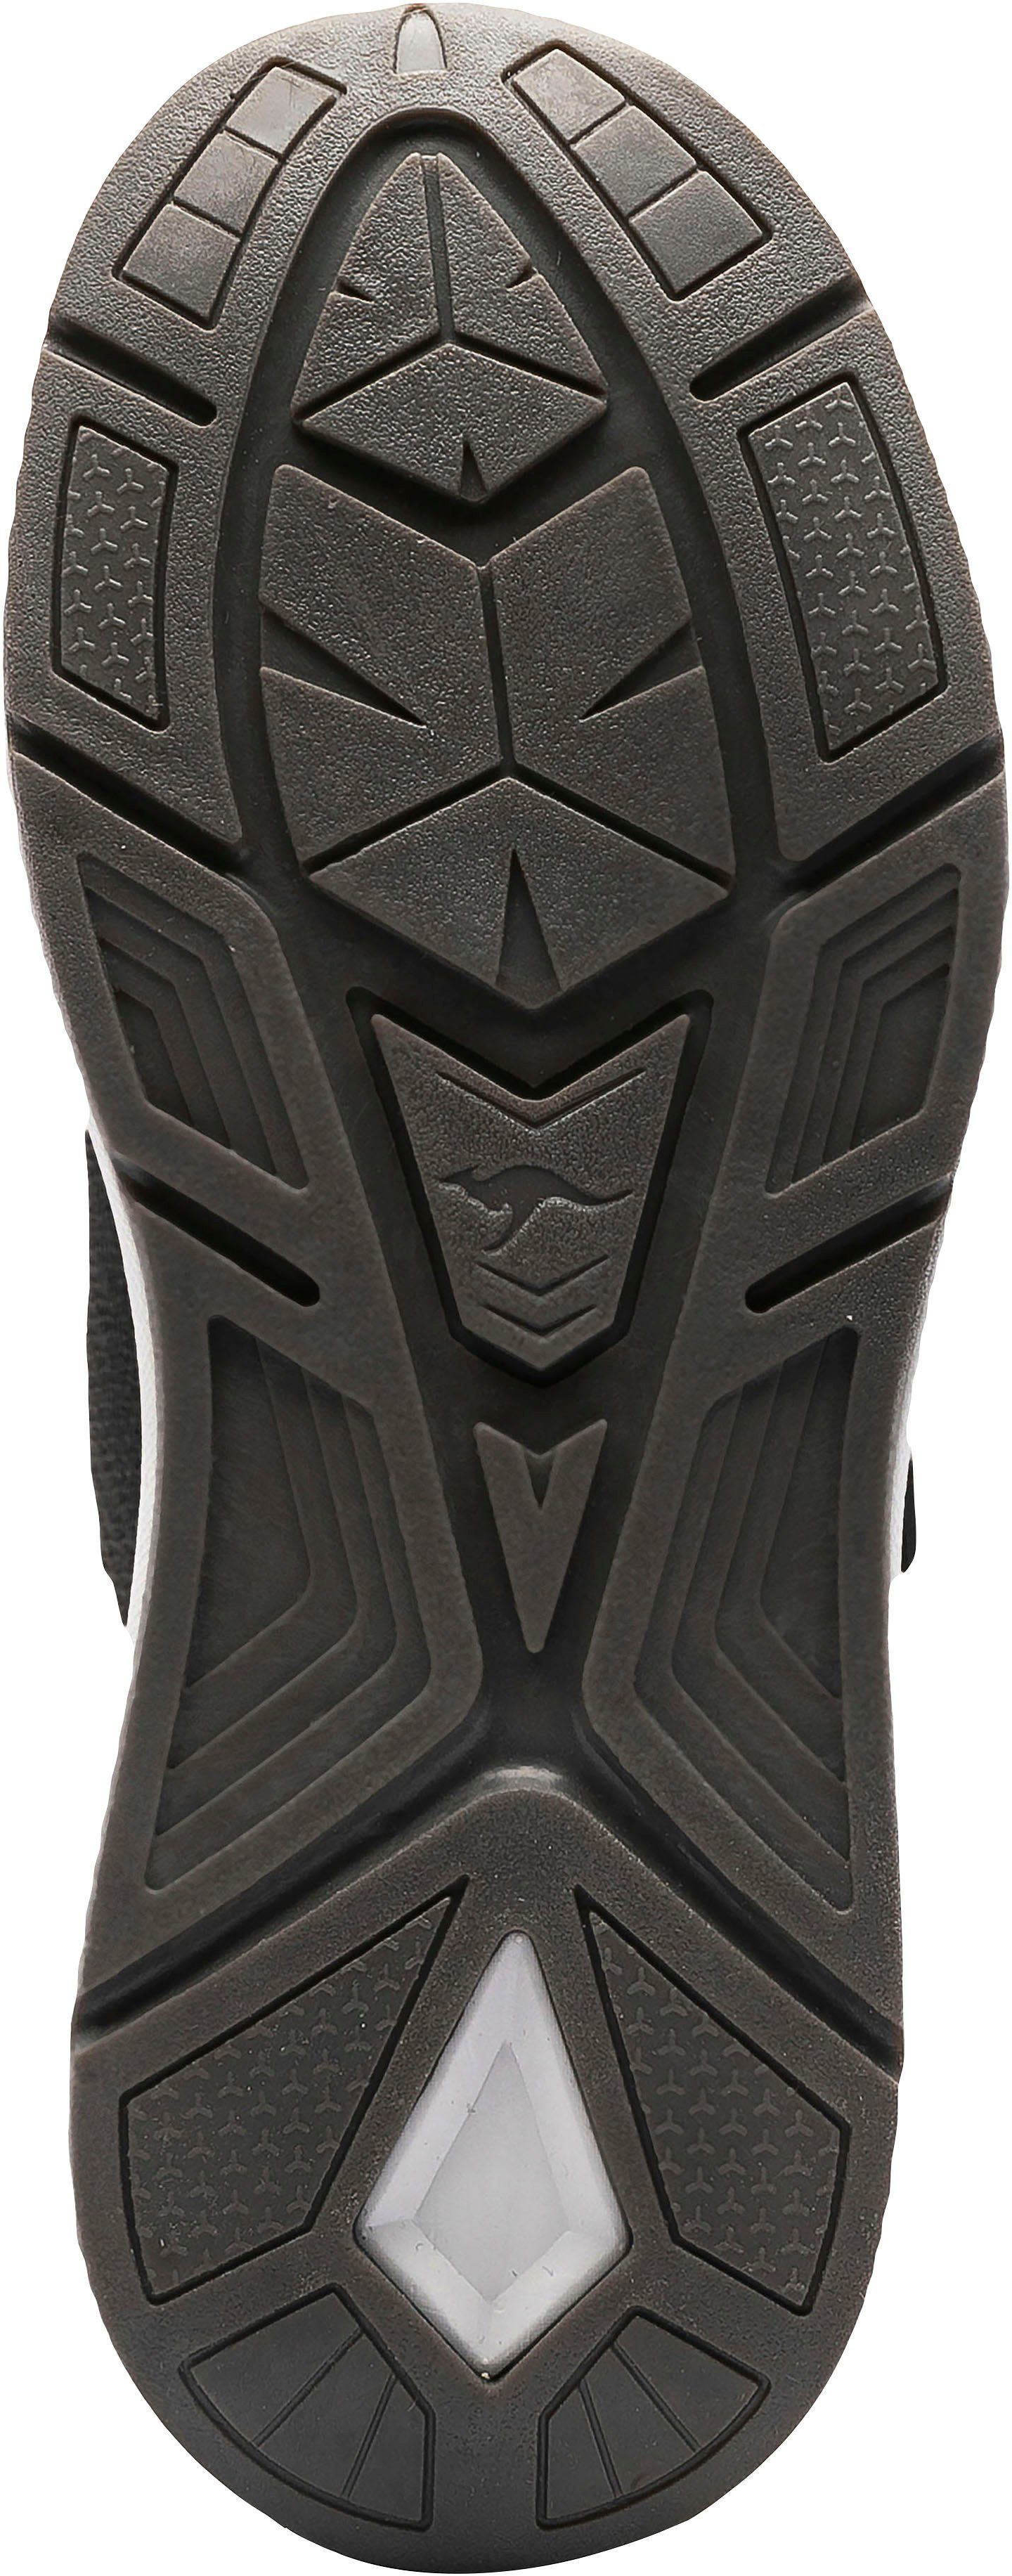 KangaROOS KD-Gym Klettverschluss Sneaker EV mit schwarz-gelb